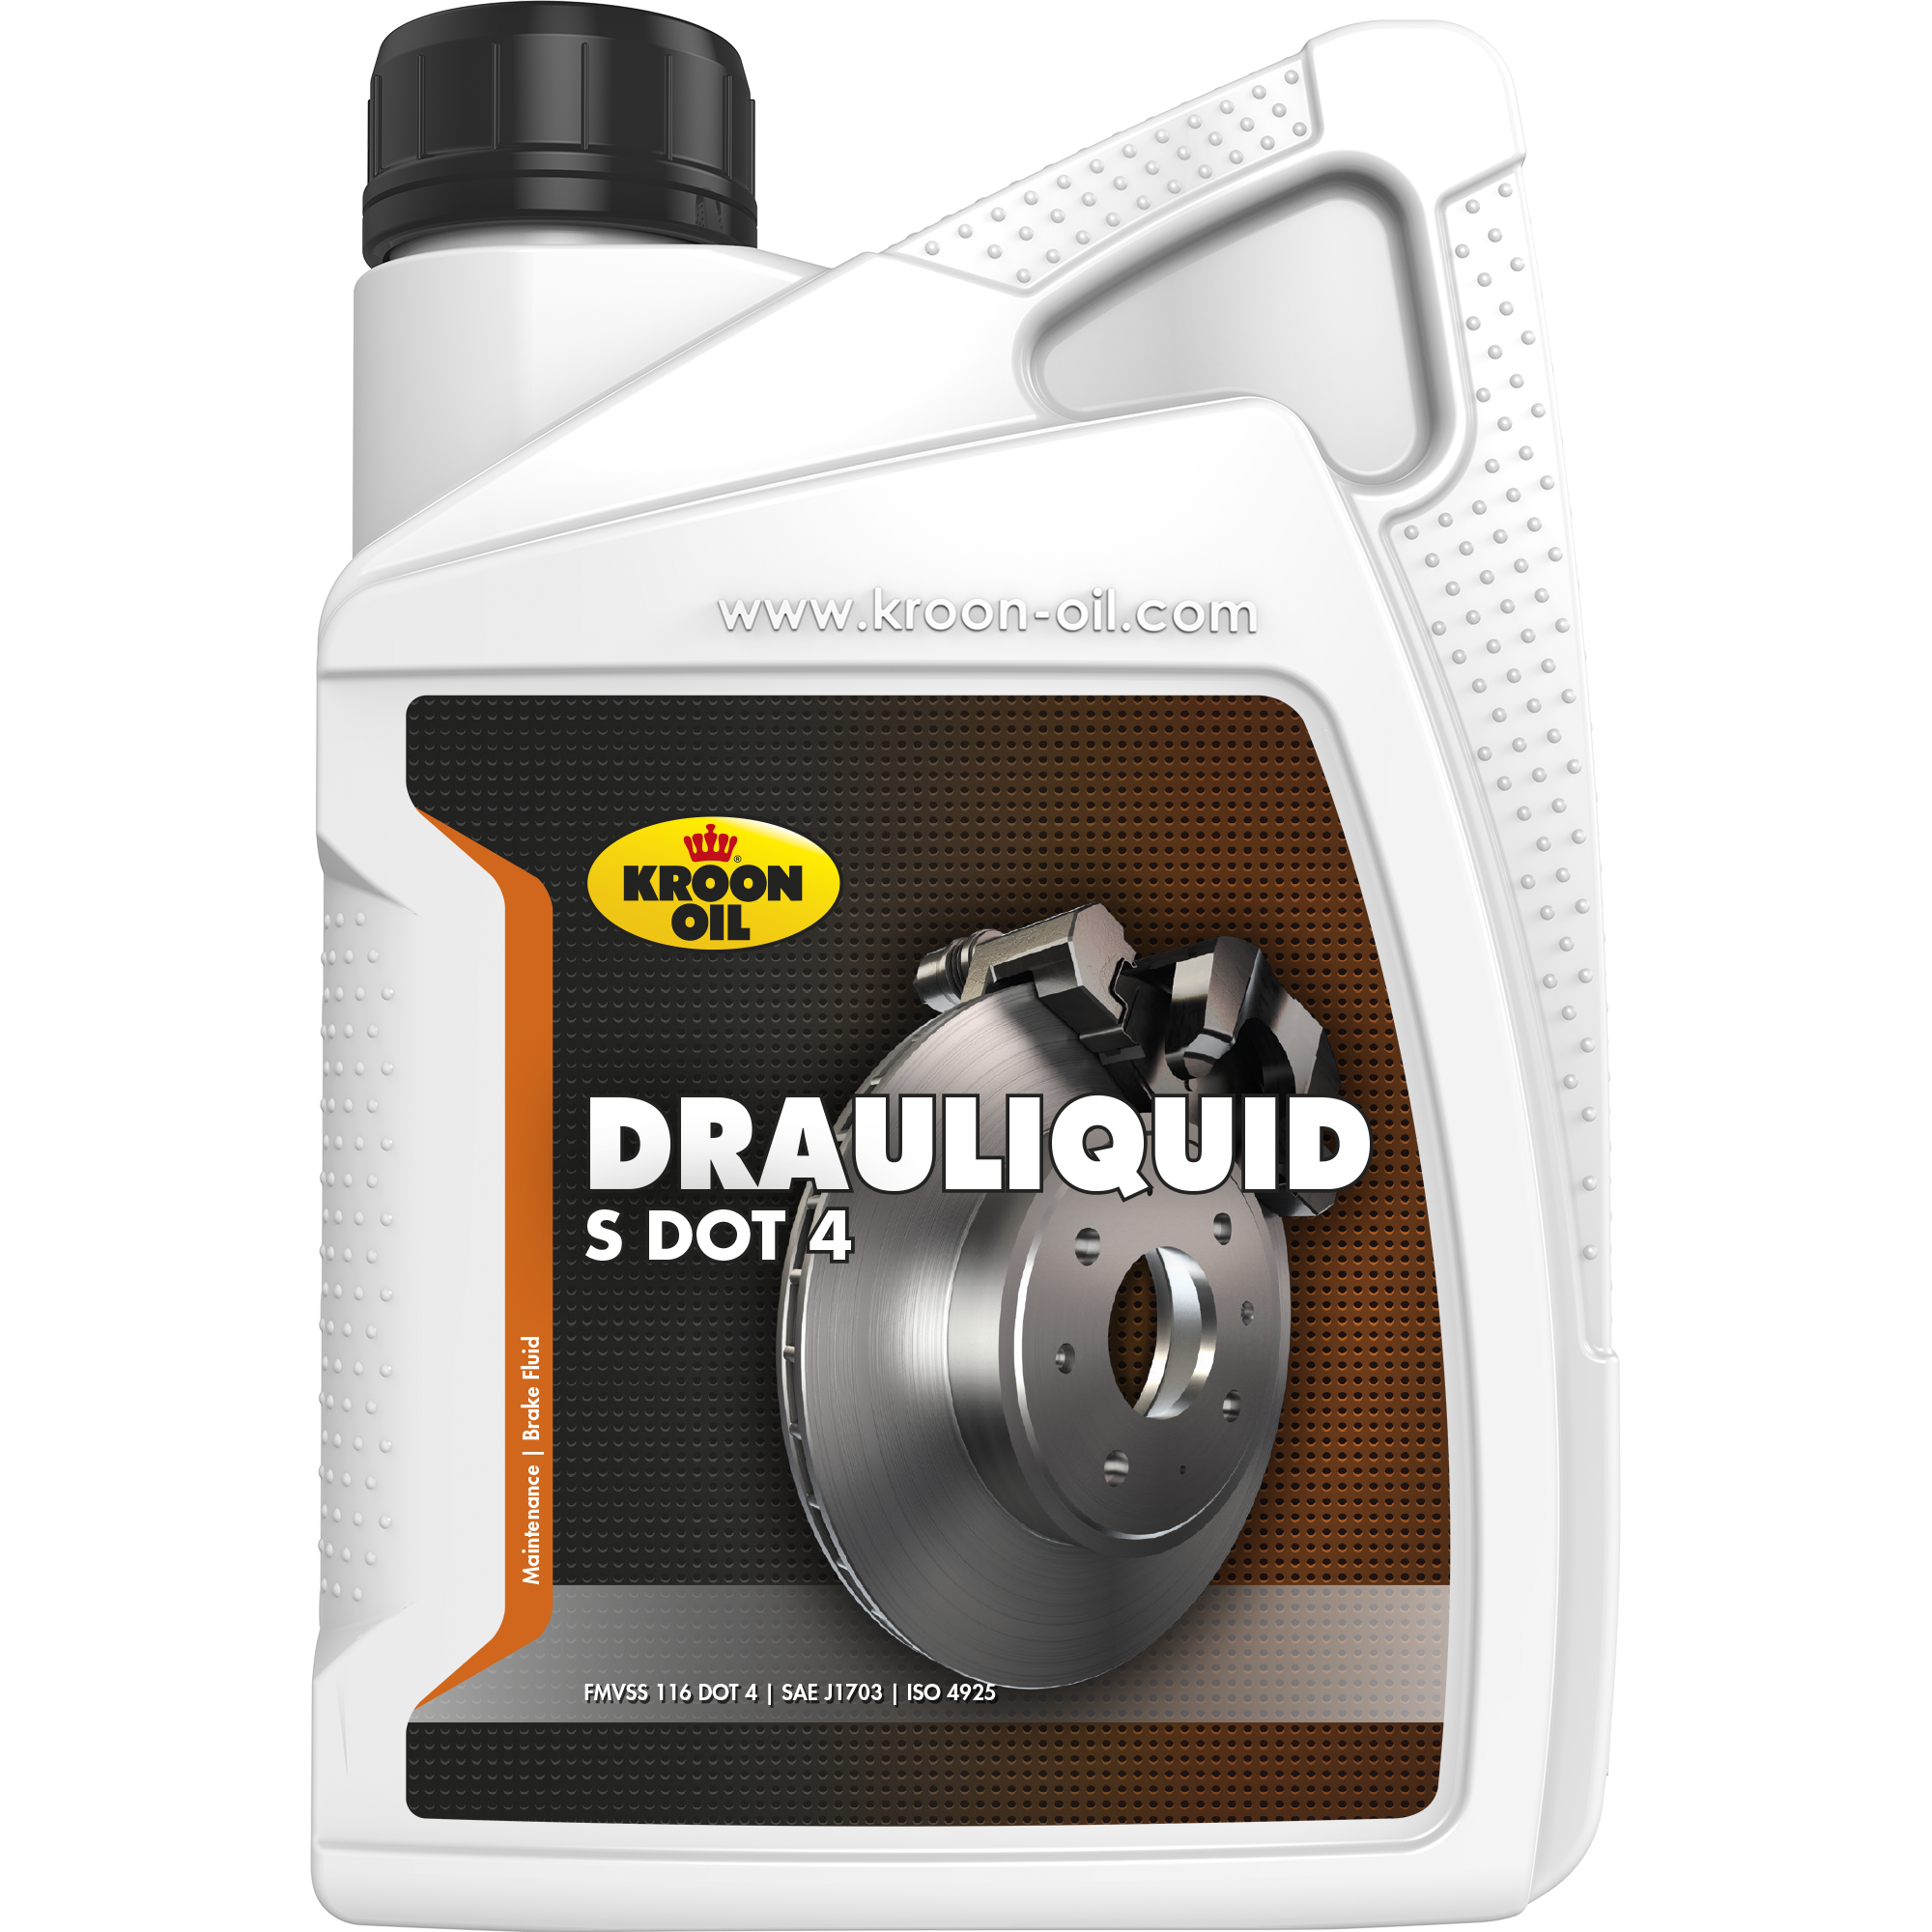 Kroon-Oil Drauliquid-S DOT 4, 1 lt